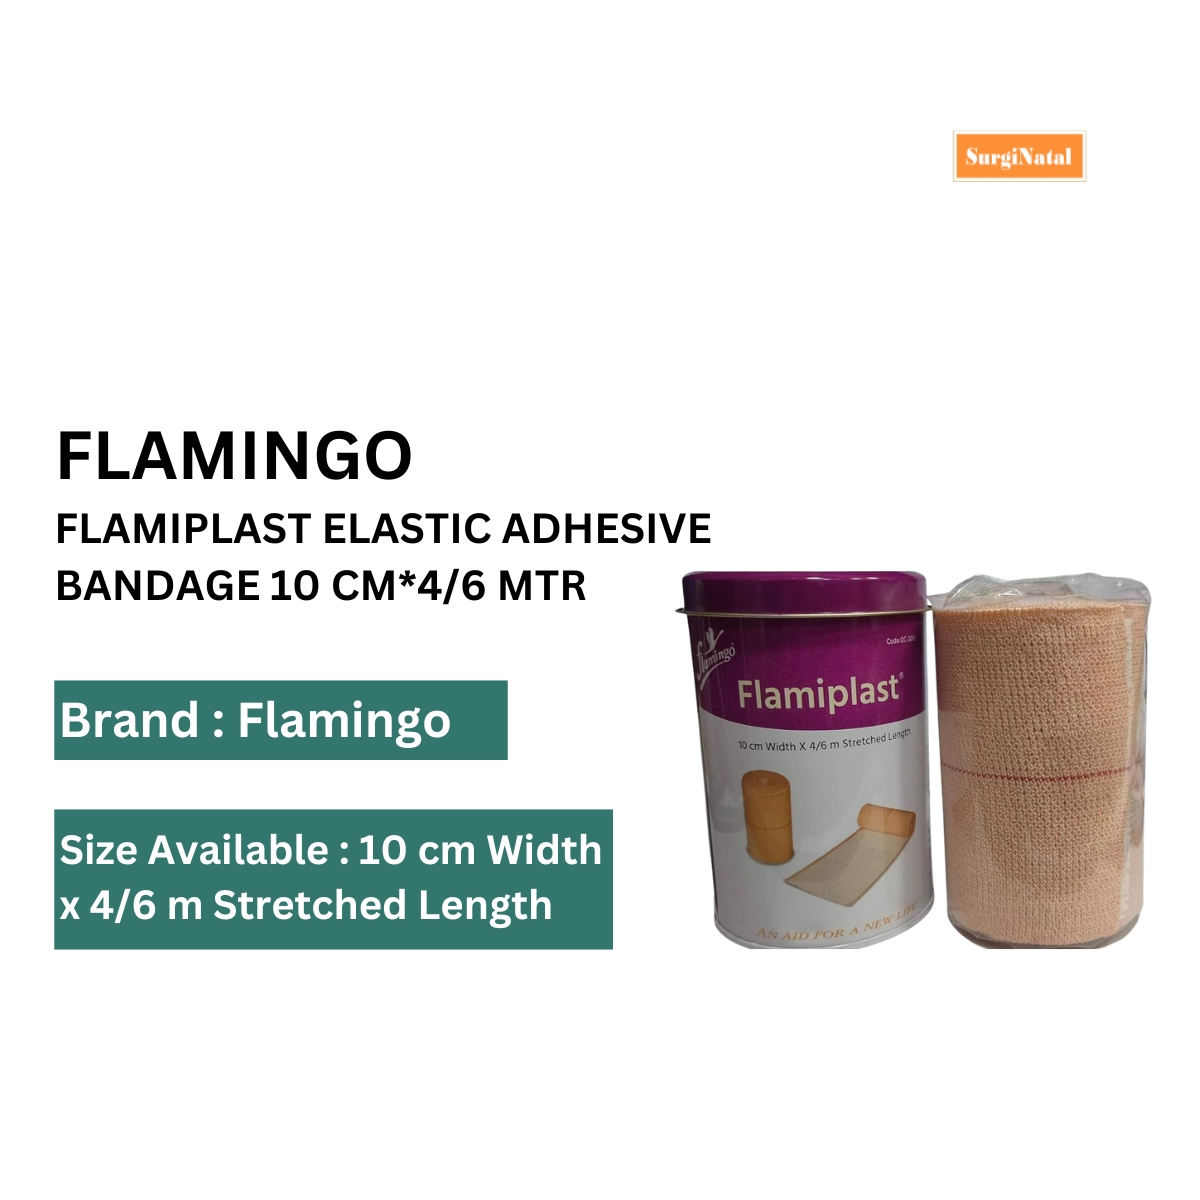 flamingo flamiplast elastic adhesive bandage 10 cm*4/6 mtr